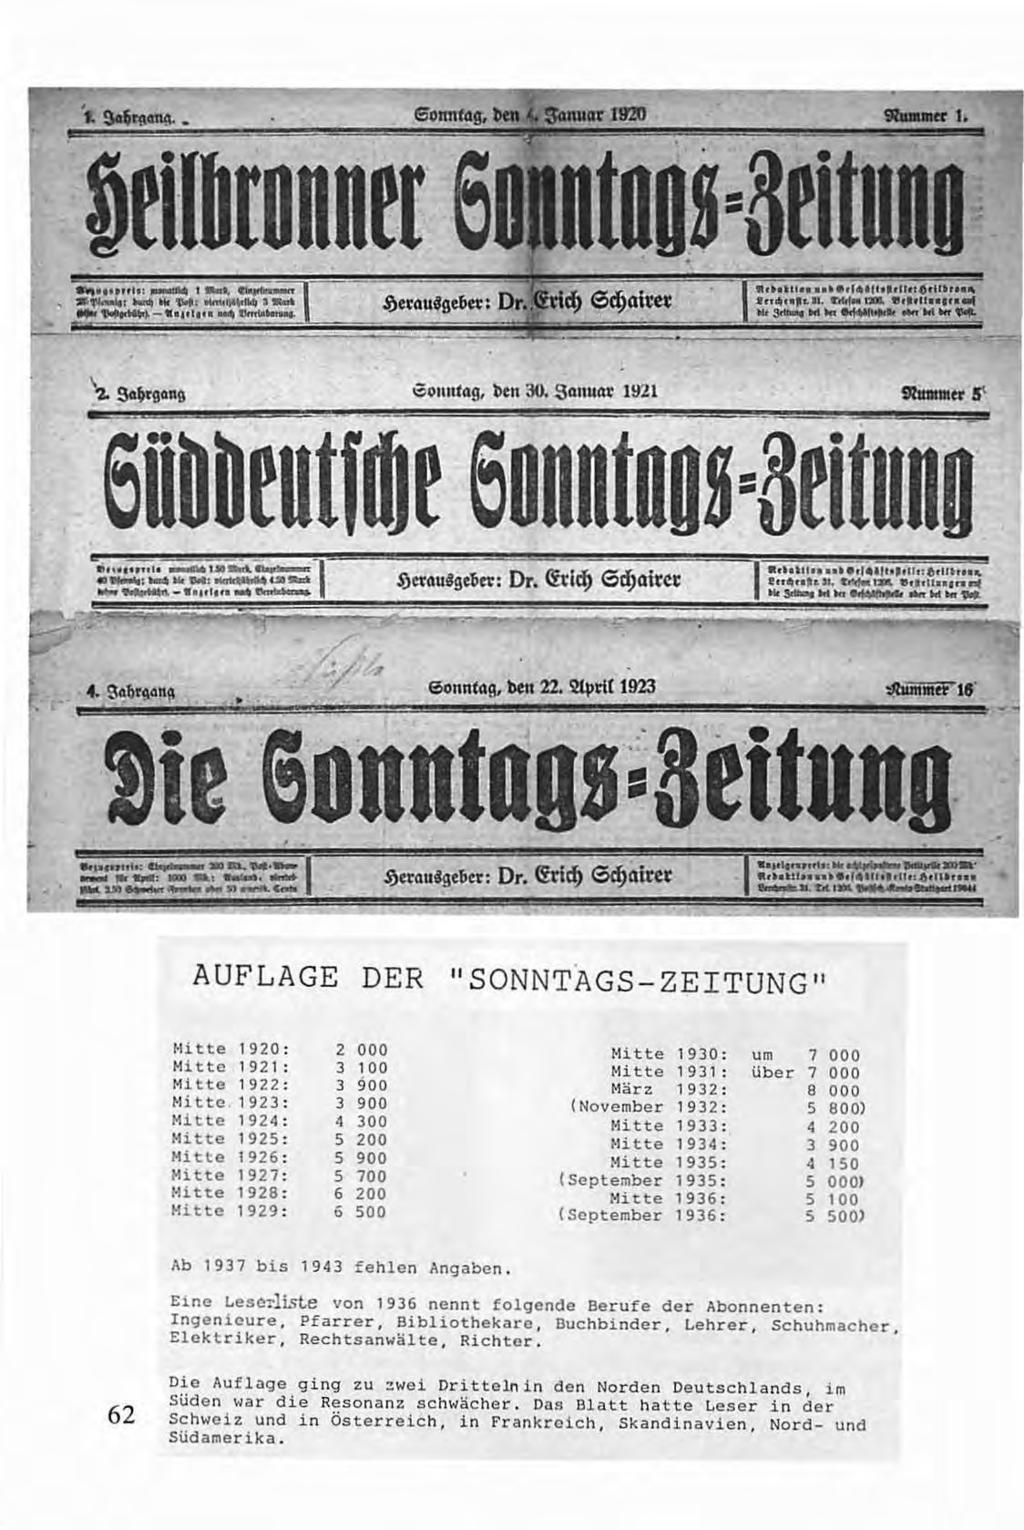 ltilbronnrr 6 too.s=ßrituno eonnt4g, ben 30. S411UCil' 1921 6übbeuumr sonntoos=aruuno SonntAg, bat 22. 21jlri( 1923 ~ie eonntoos=btituno.